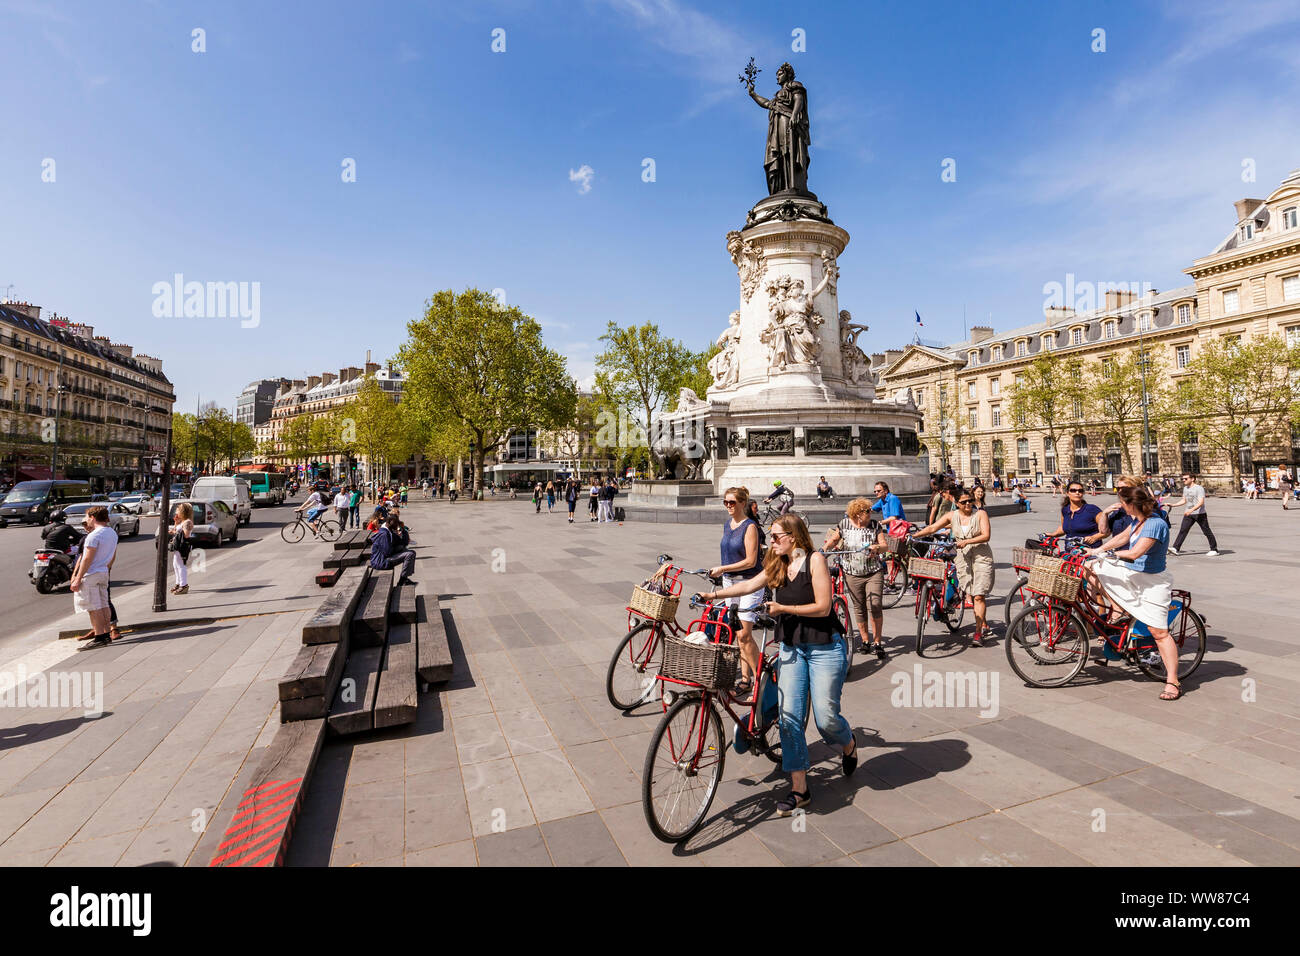 France, Paris, centre-ville, Place de la RÃ©publique, visite guidée en vélo, Paris à vélo, vélo, visite guidée avec guide Banque D'Images